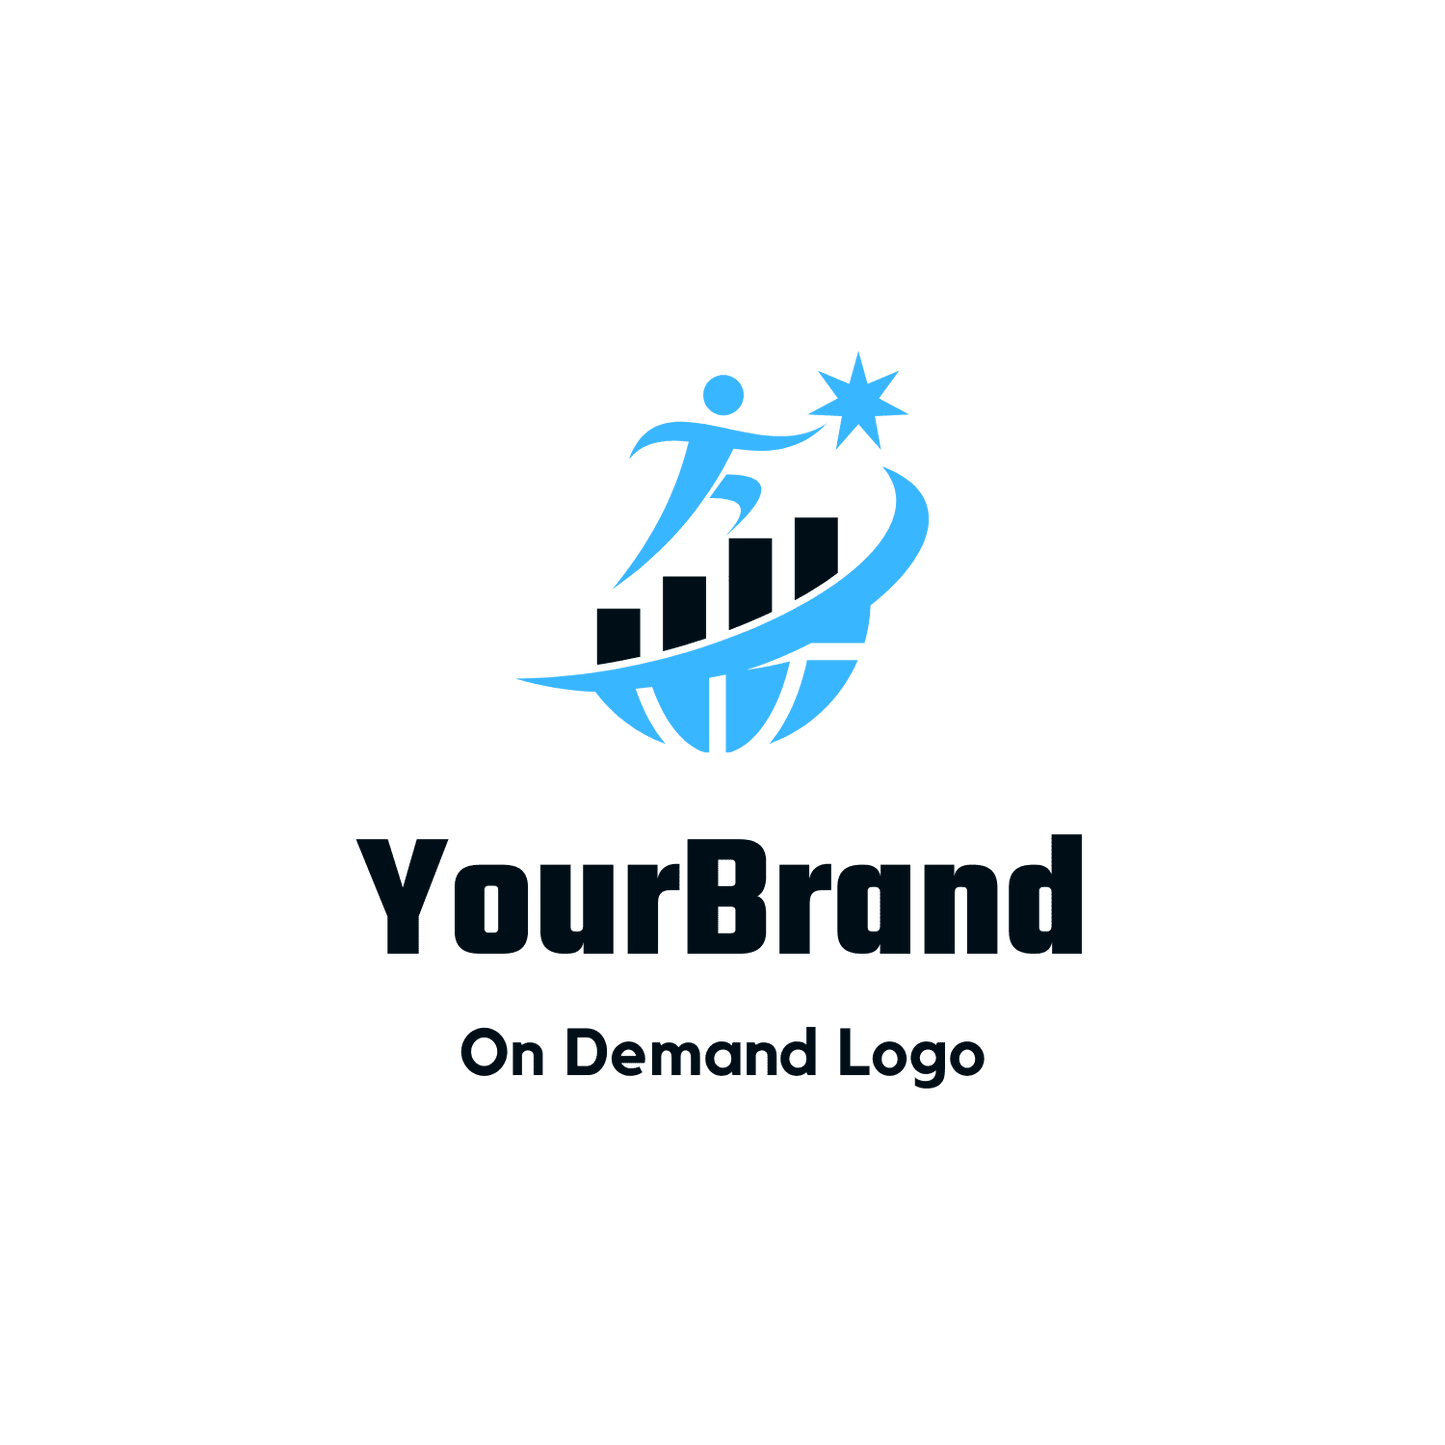 Logo Design Help Brand On Demand